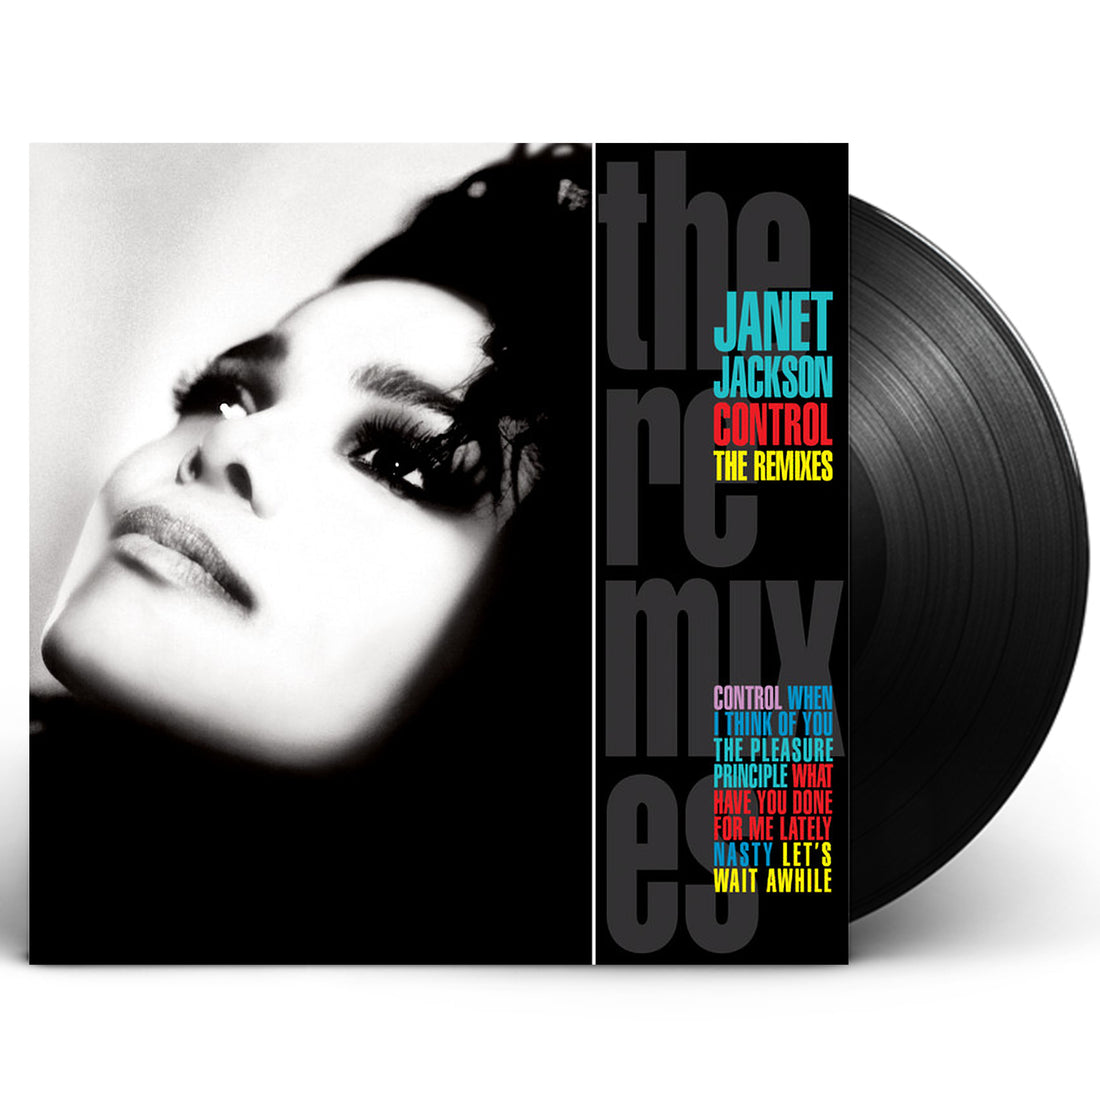 Janet Jackson "Control: The Remixes" 2xLP Vinyl